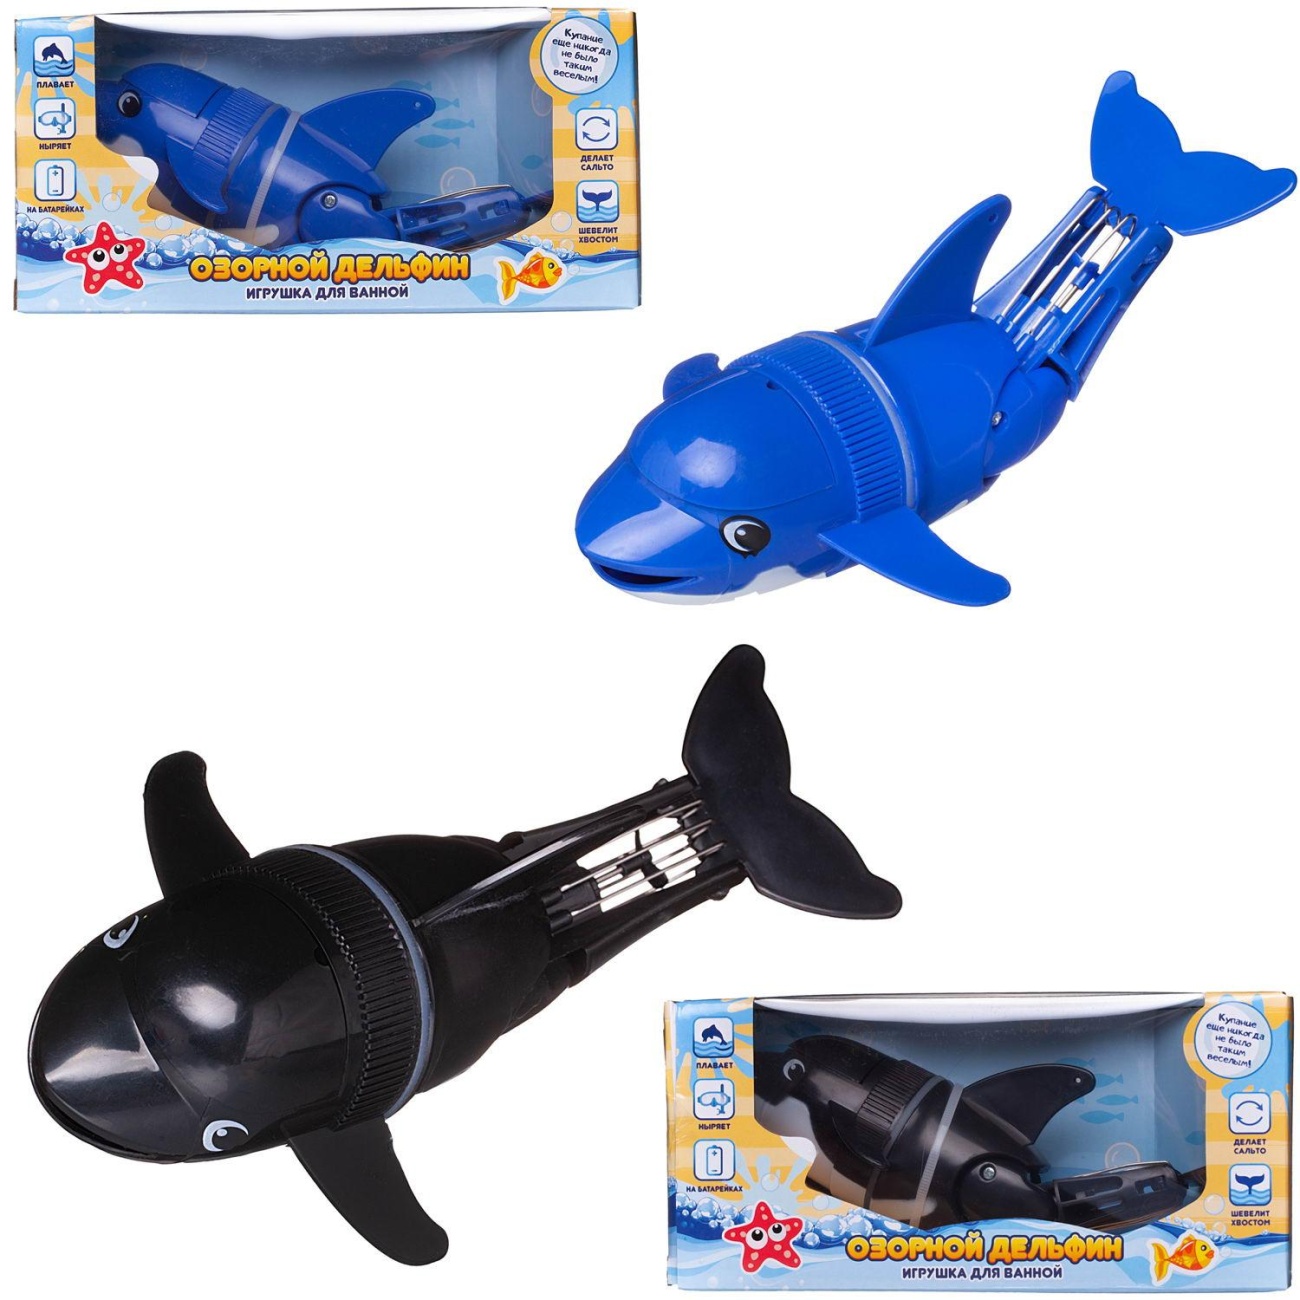 Игрушка д/ванной Abtoys Веселое купание Озорной дельфин PT-01755